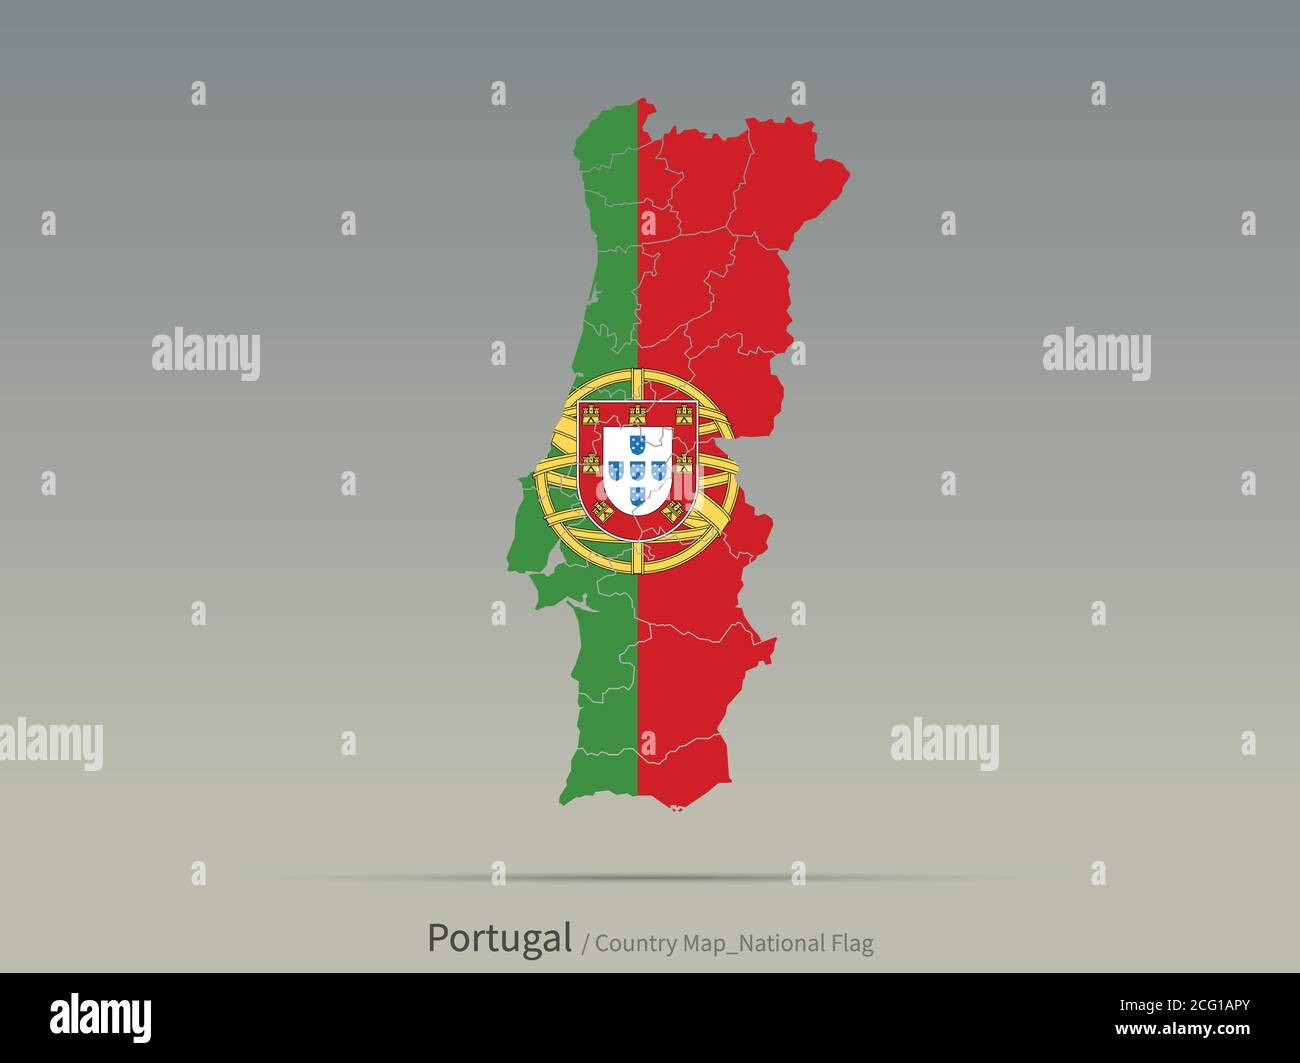 Drapeau du Portugal isolé sur la carte. Carte et drapeau des pays européens. Illustration de Vecteur